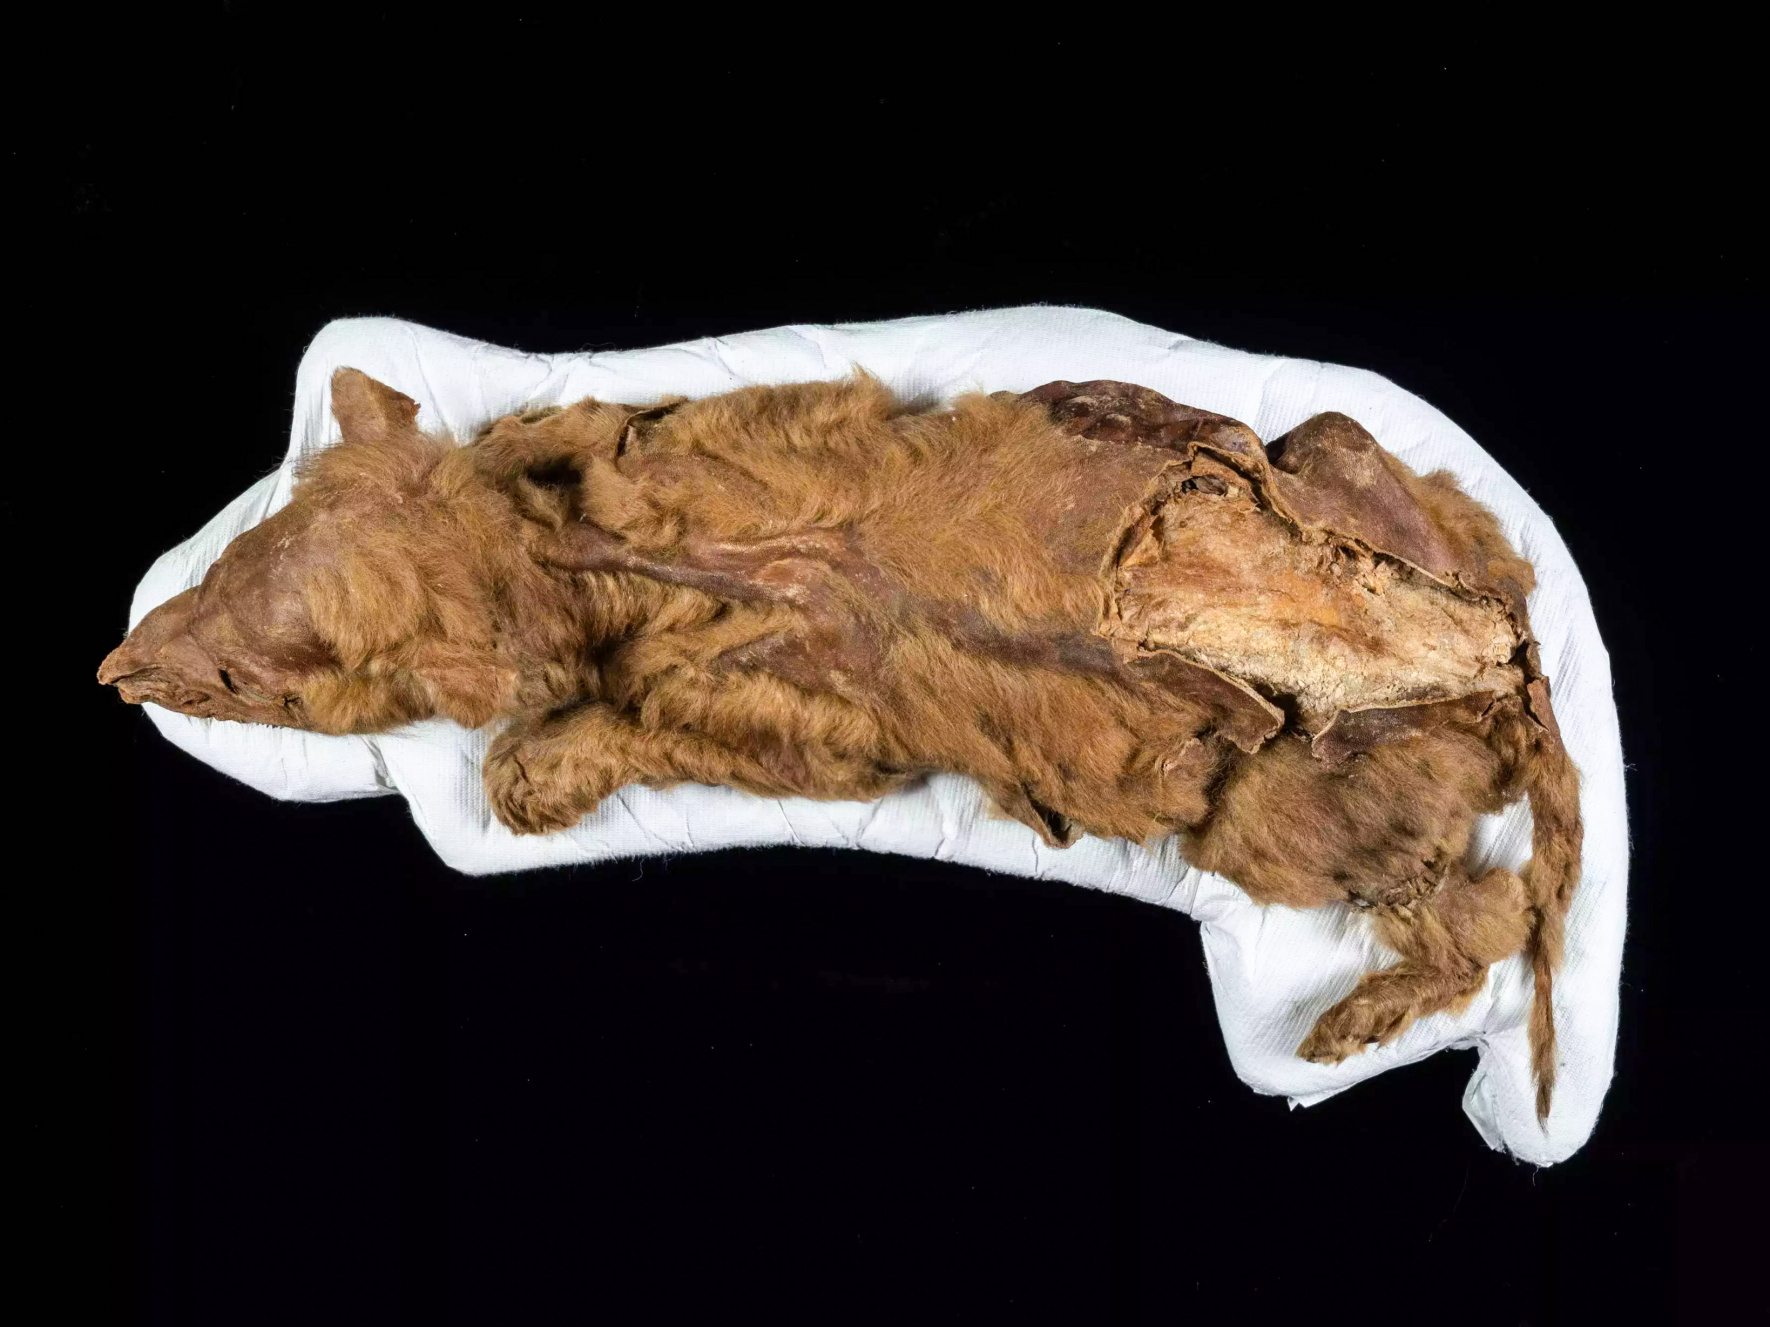 Starověké štěně vlka bylo nalezeno dokonale uchované v permafrostu na Yukonu v Kanadě.